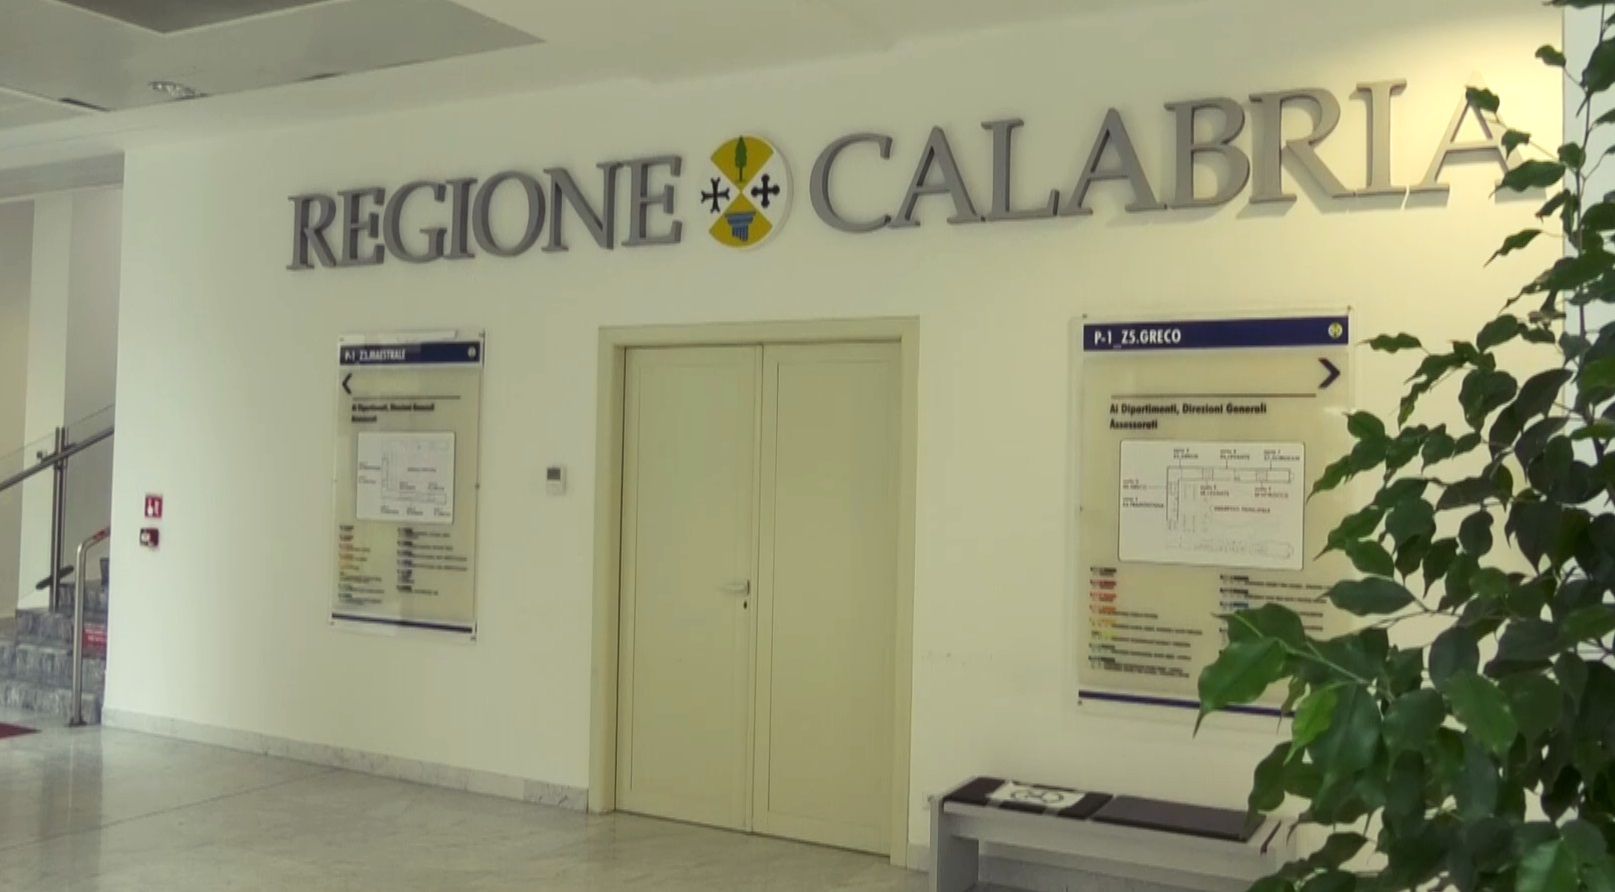 Le criticità nelle politiche della casa in Calabria: abitazioni vetuste, degrado e carenze istituzionali